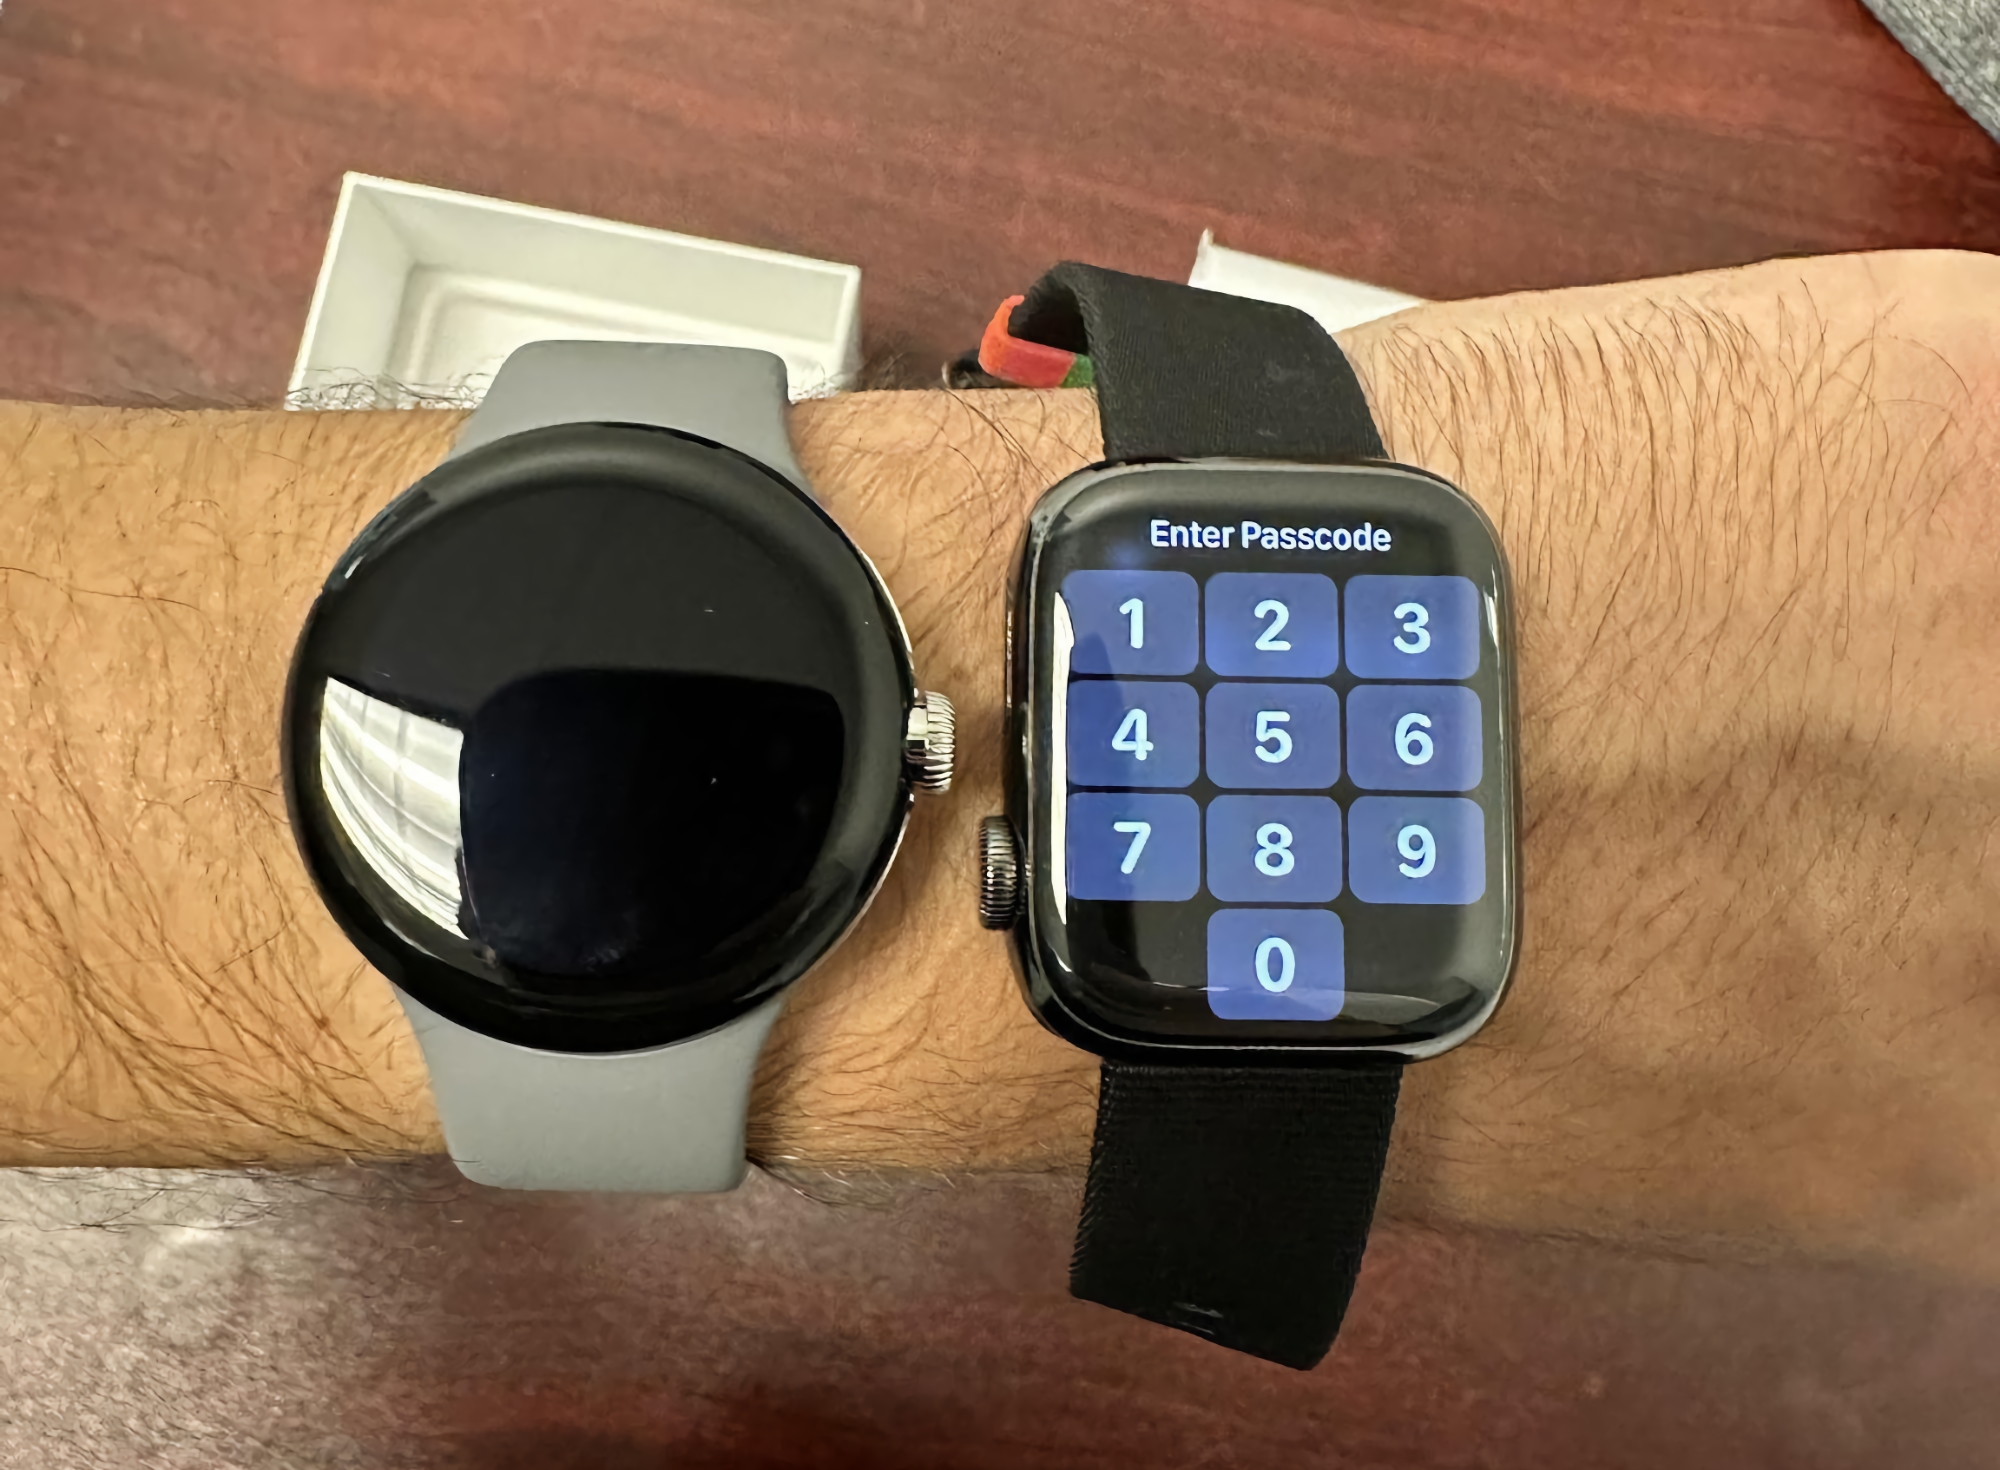 Un utente di Reddit ha mostrato immagini "live" del Pixel Watch, la novità di Google è stata confrontata con l'Apple Watch